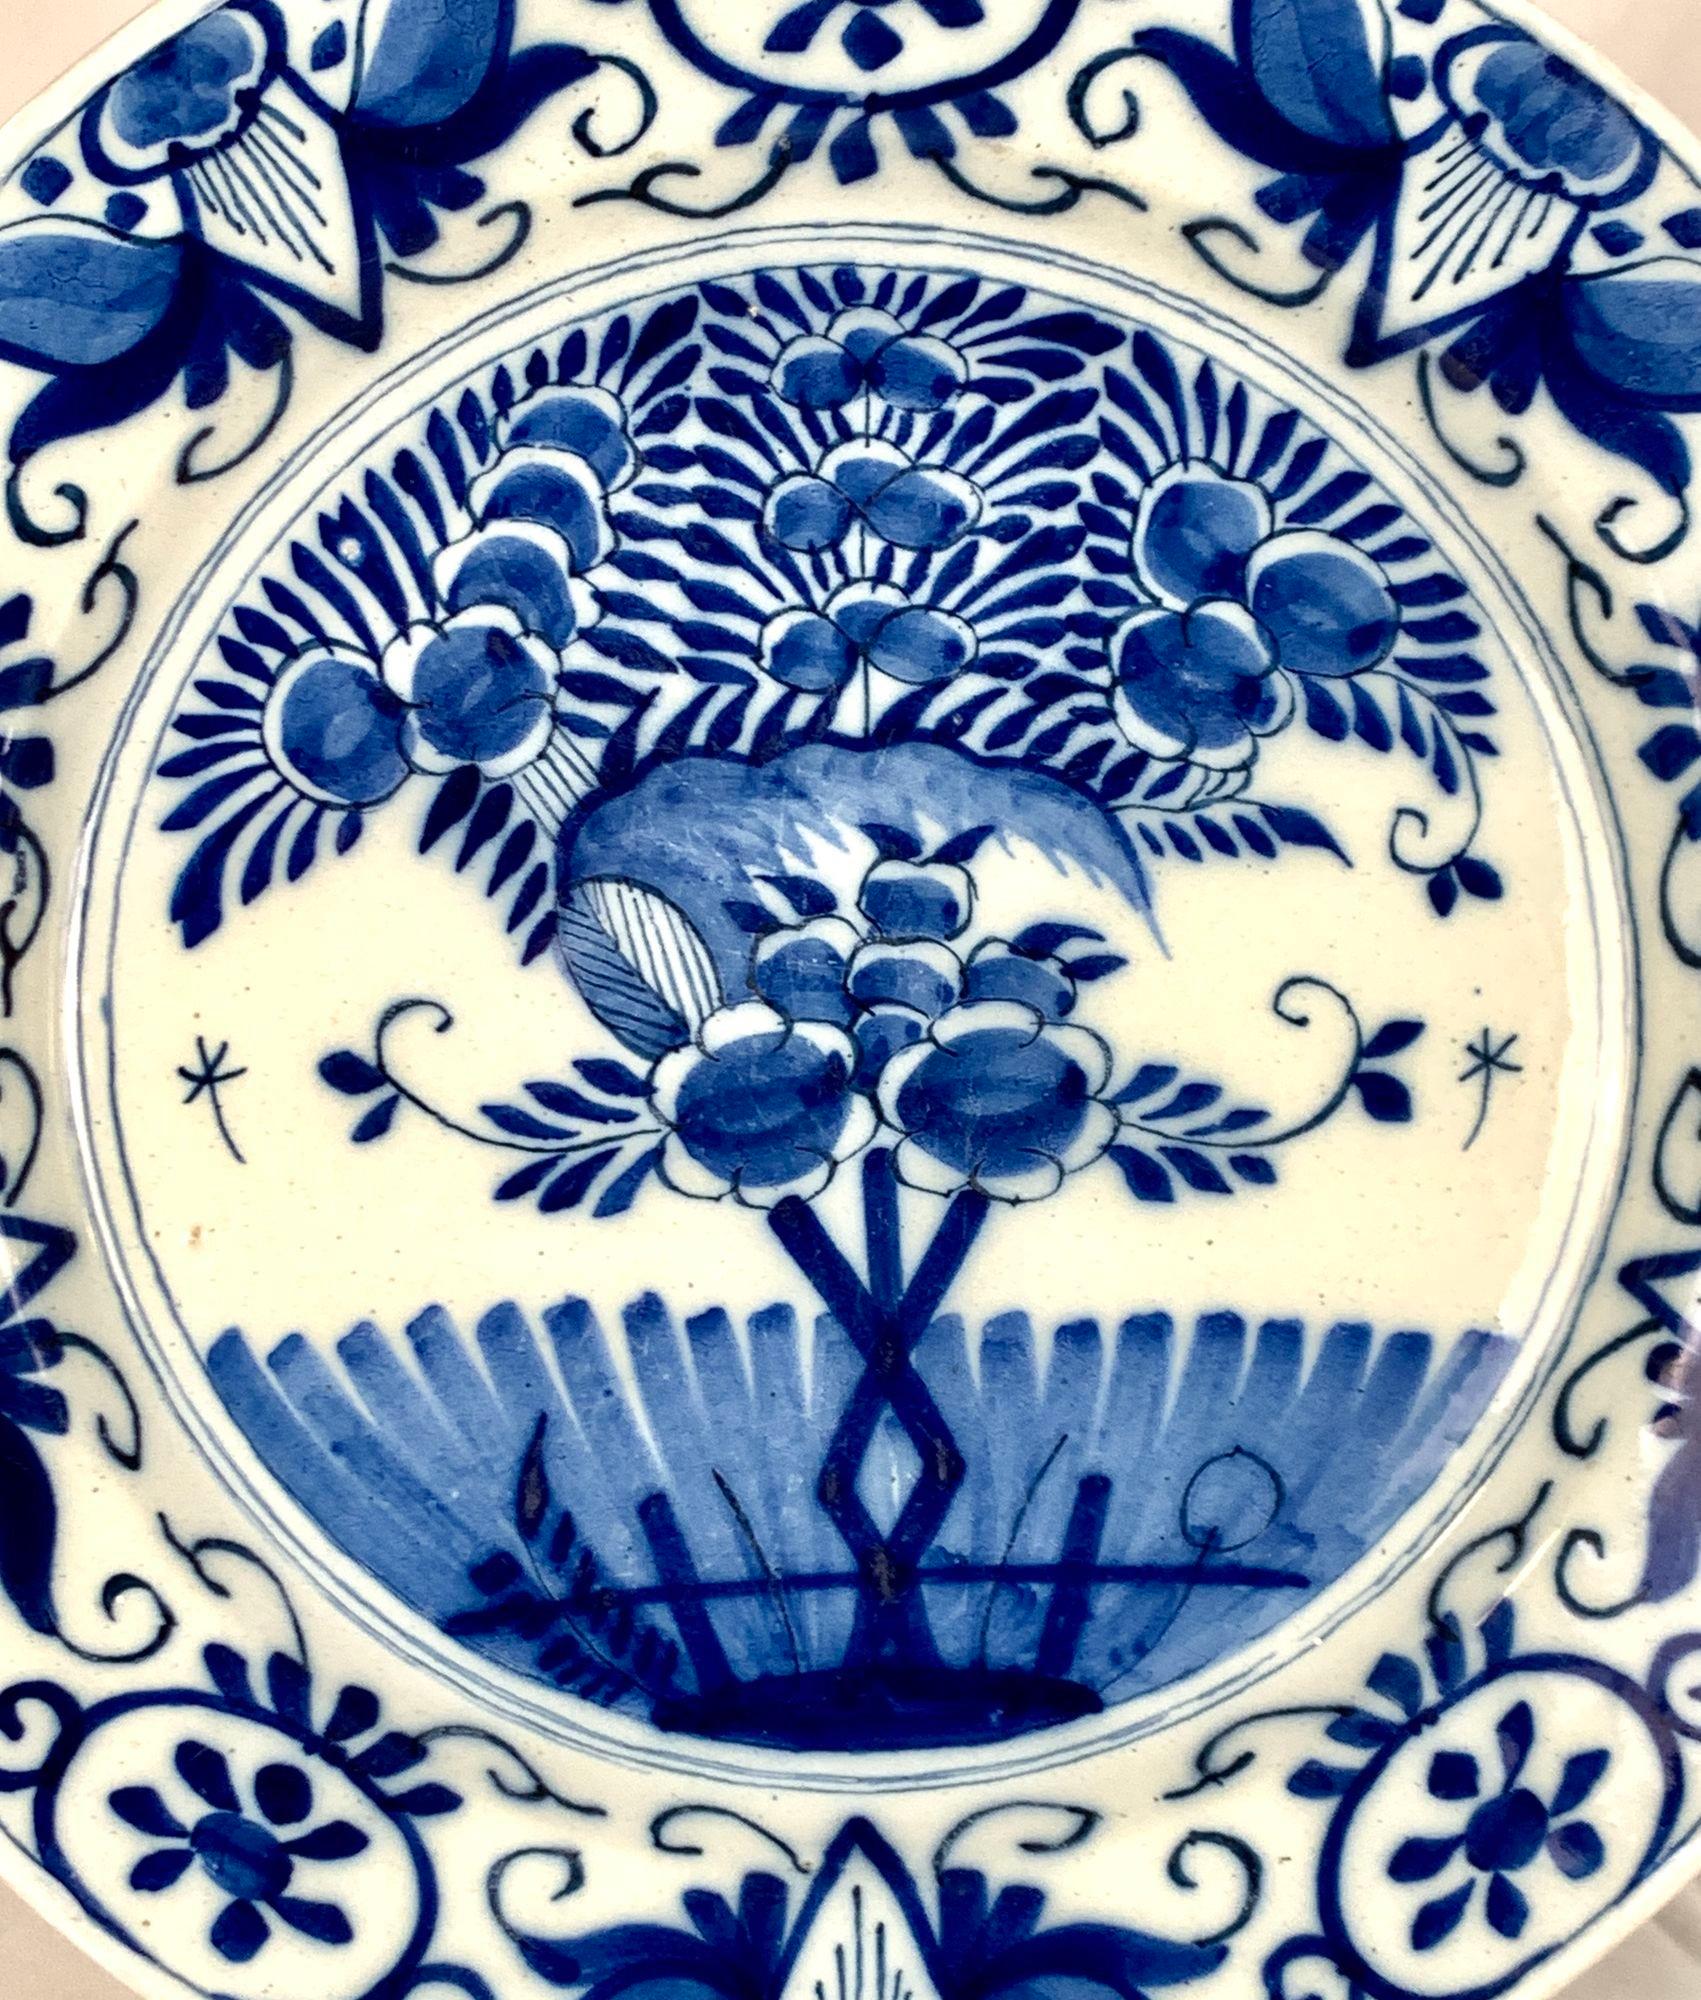 Dieses schöne blau-weiße Delft-Geschirr wurde um 1780 in den Niederlanden hergestellt.
Sie wurde sorgfältig von Hand in zwei Kobaltblautönen auf eine weiße Zinnglasuroberfläche gemalt.
In der Mitte des Ladegeräts ist eine schöne Gartenszene mit